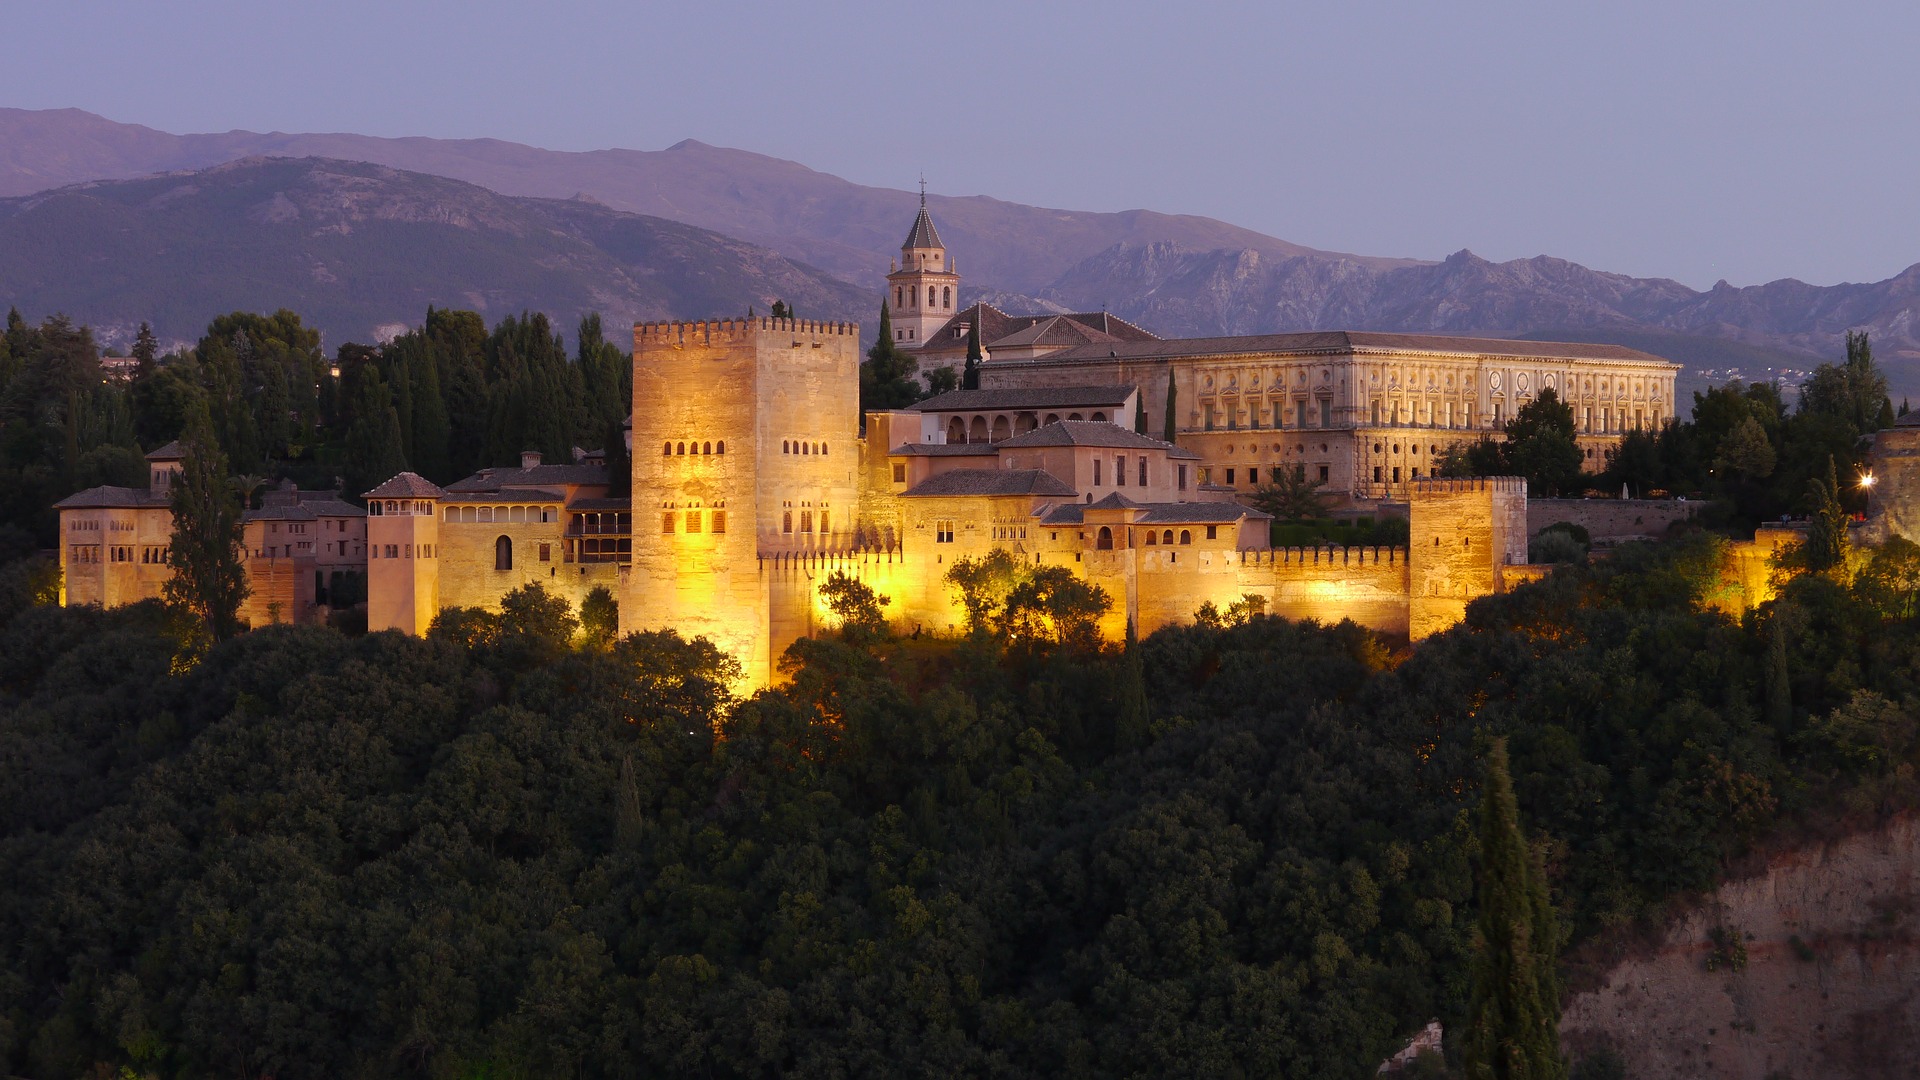 Visita Nocturna a la Alhambra: Palacio de Carlos V y Generalife